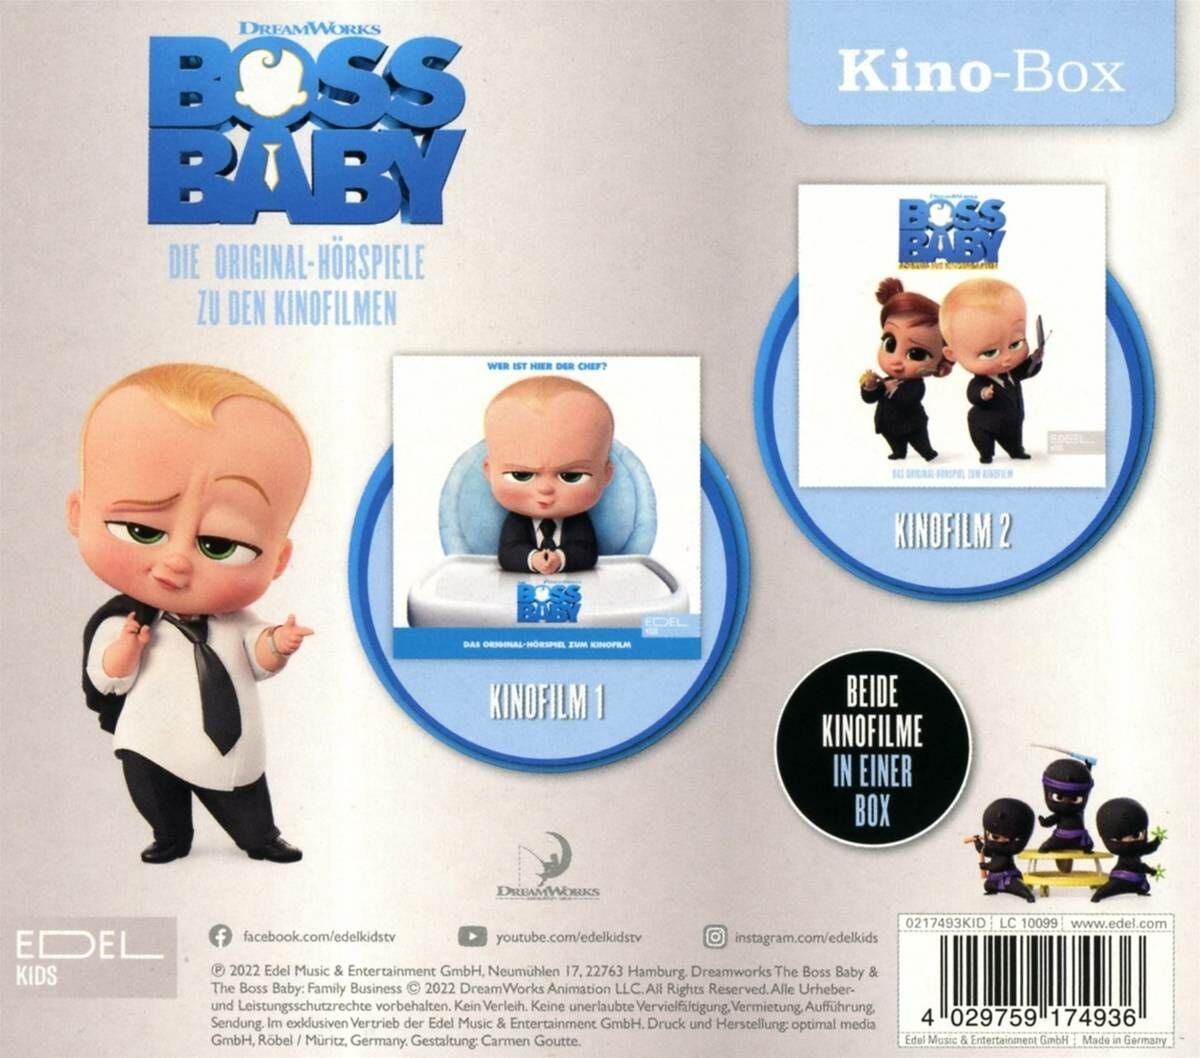 boss-baby-boss-baby-kino-box-kinofilm-1-2-chf-18-40